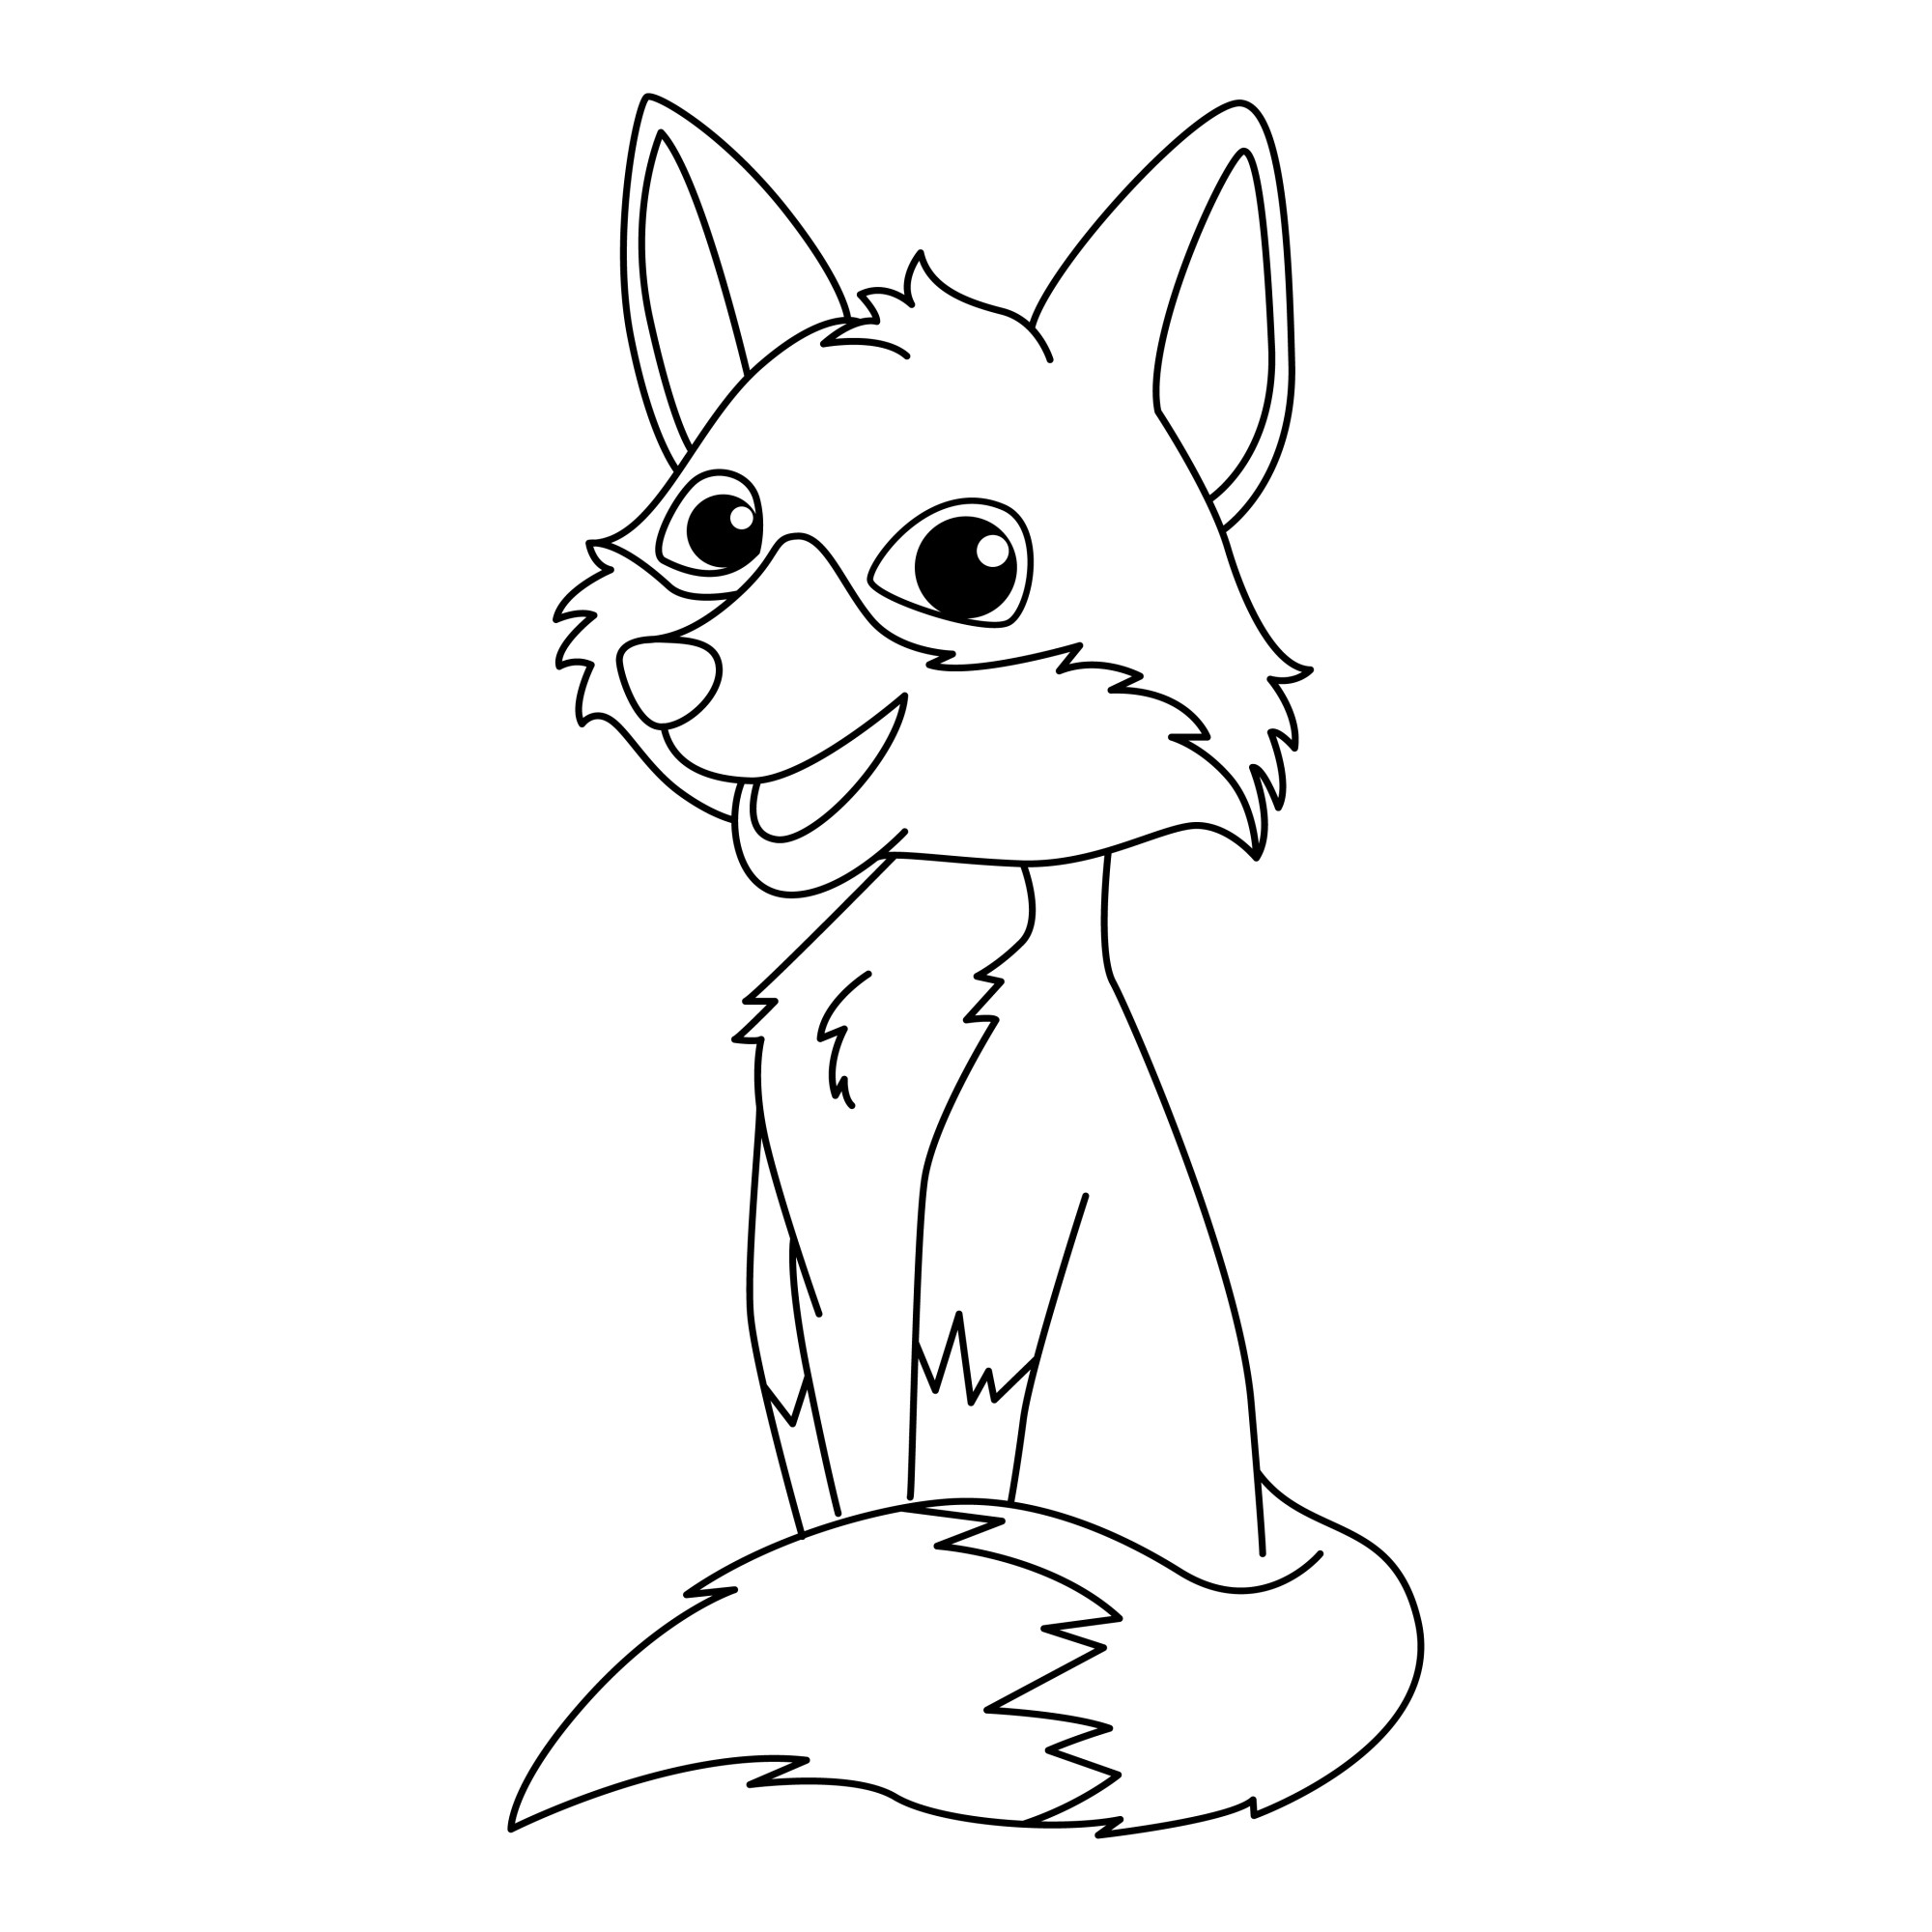 Раскраска для детей: мультяшный лис сидит с поджатым хвостом